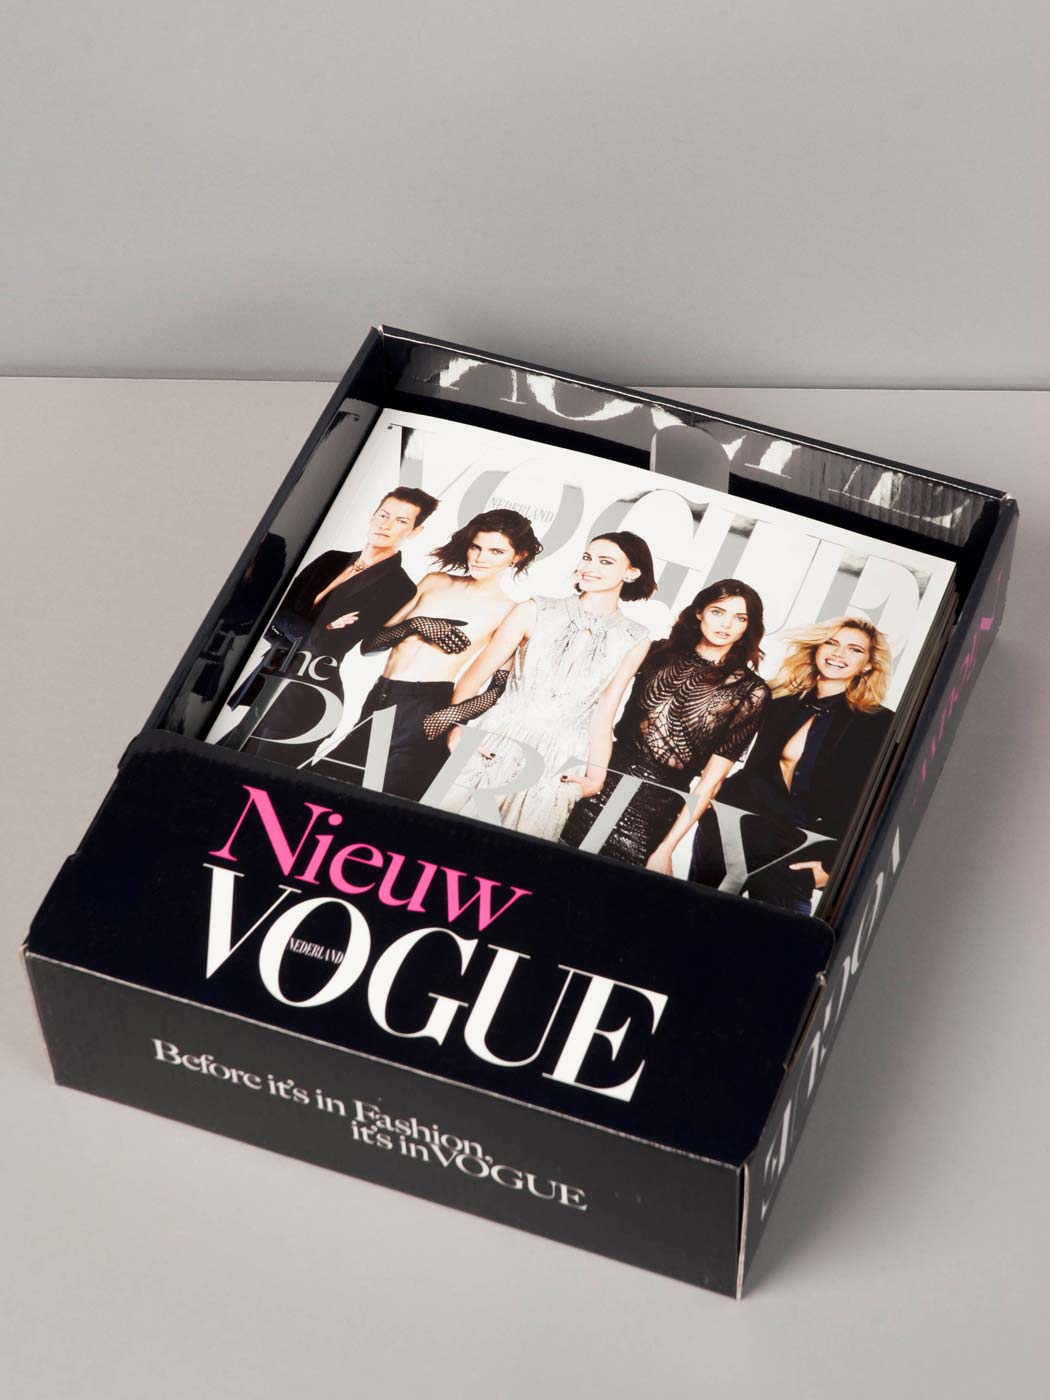 Vogue nederland, branding